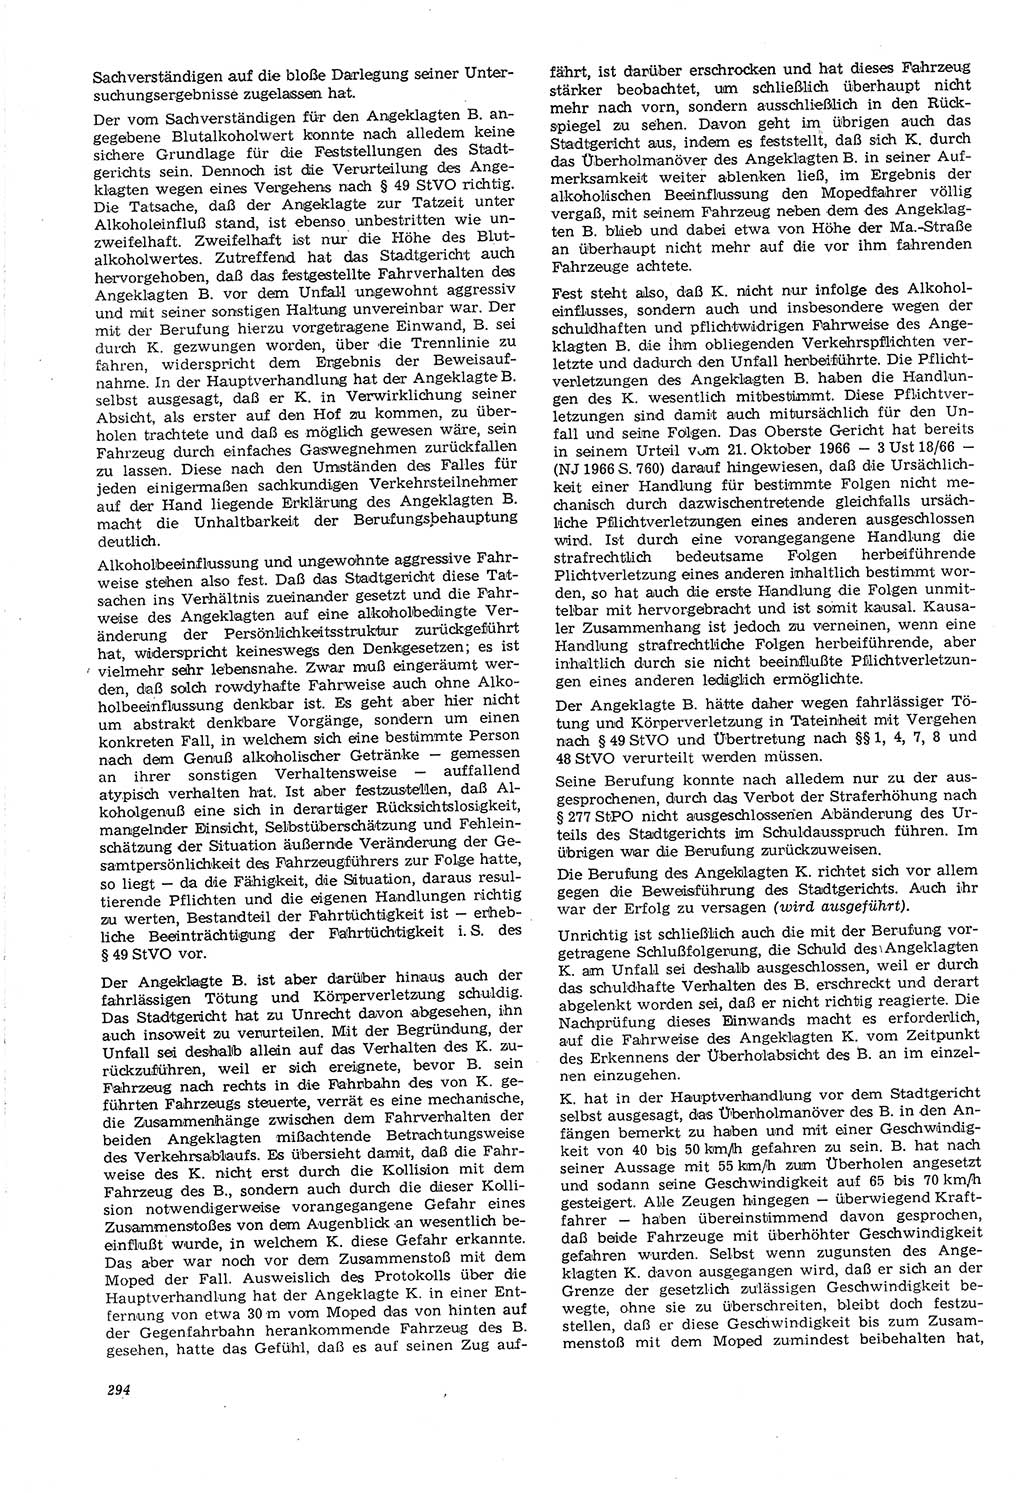 Neue Justiz (NJ), Zeitschrift für Recht und Rechtswissenschaft [Deutsche Demokratische Republik (DDR)], 21. Jahrgang 1967, Seite 294 (NJ DDR 1967, S. 294)